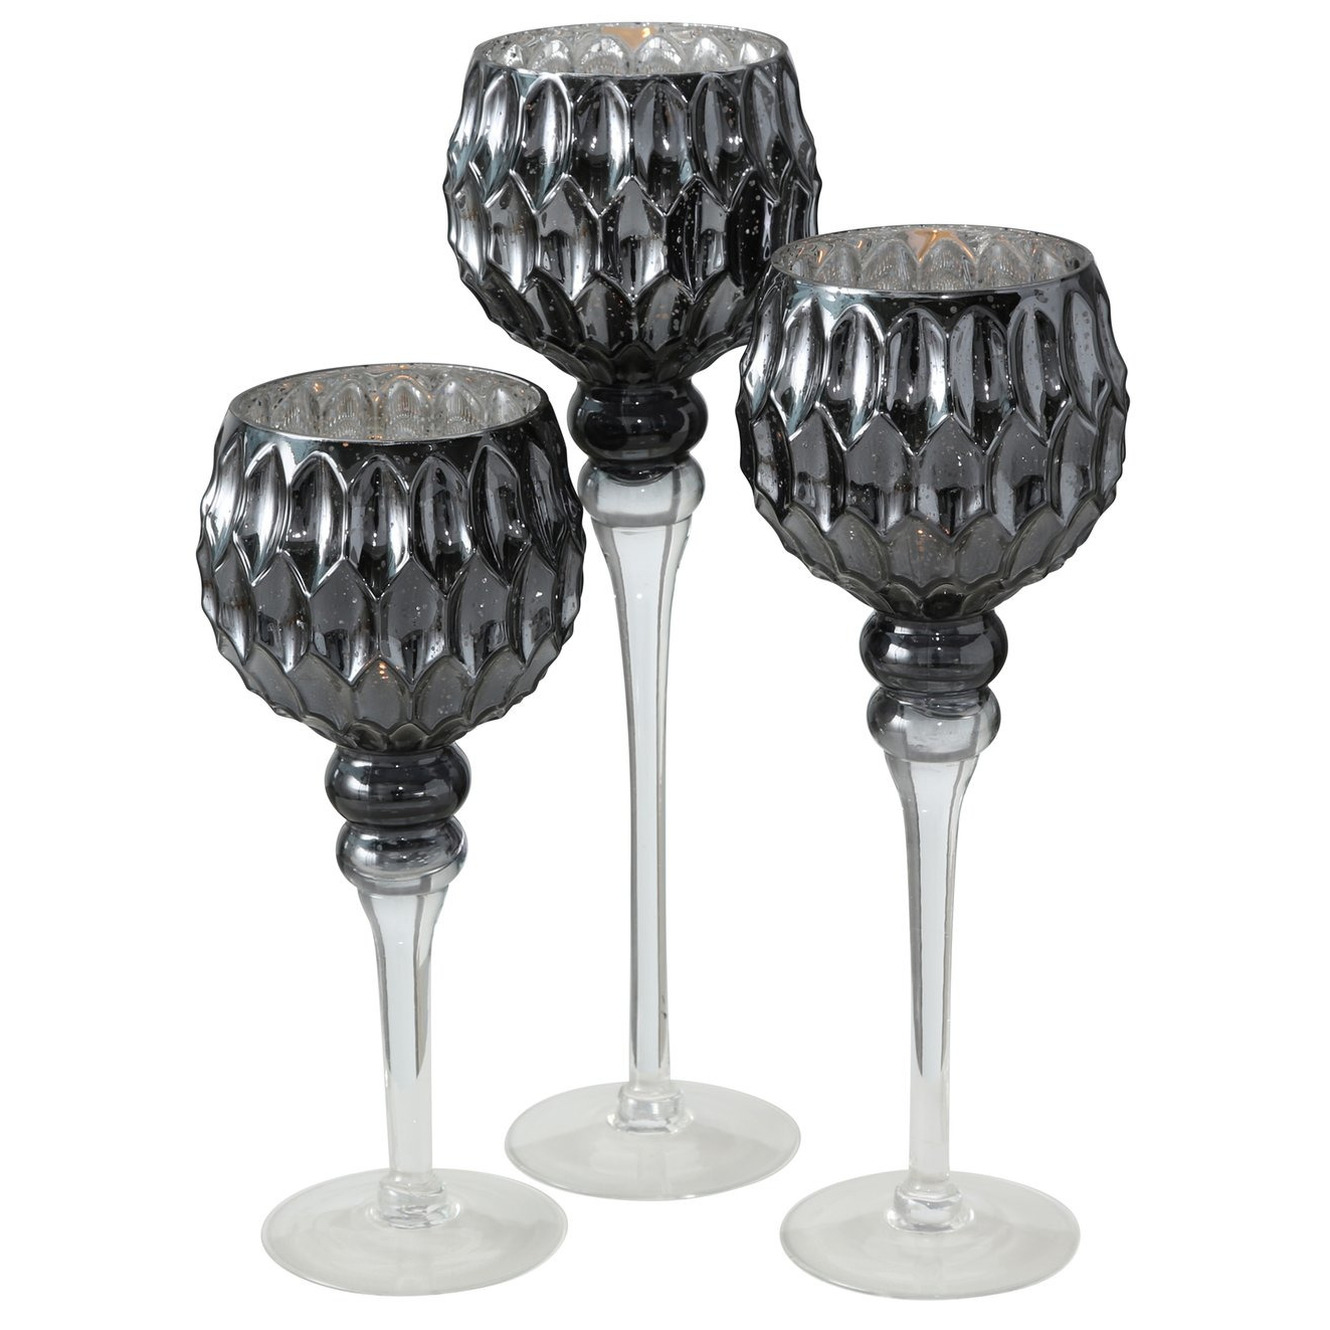 Luxe glazen design kaarsenhouders-windlichten set van 3x stuks antraciet-zilver transparant 30-40 cm